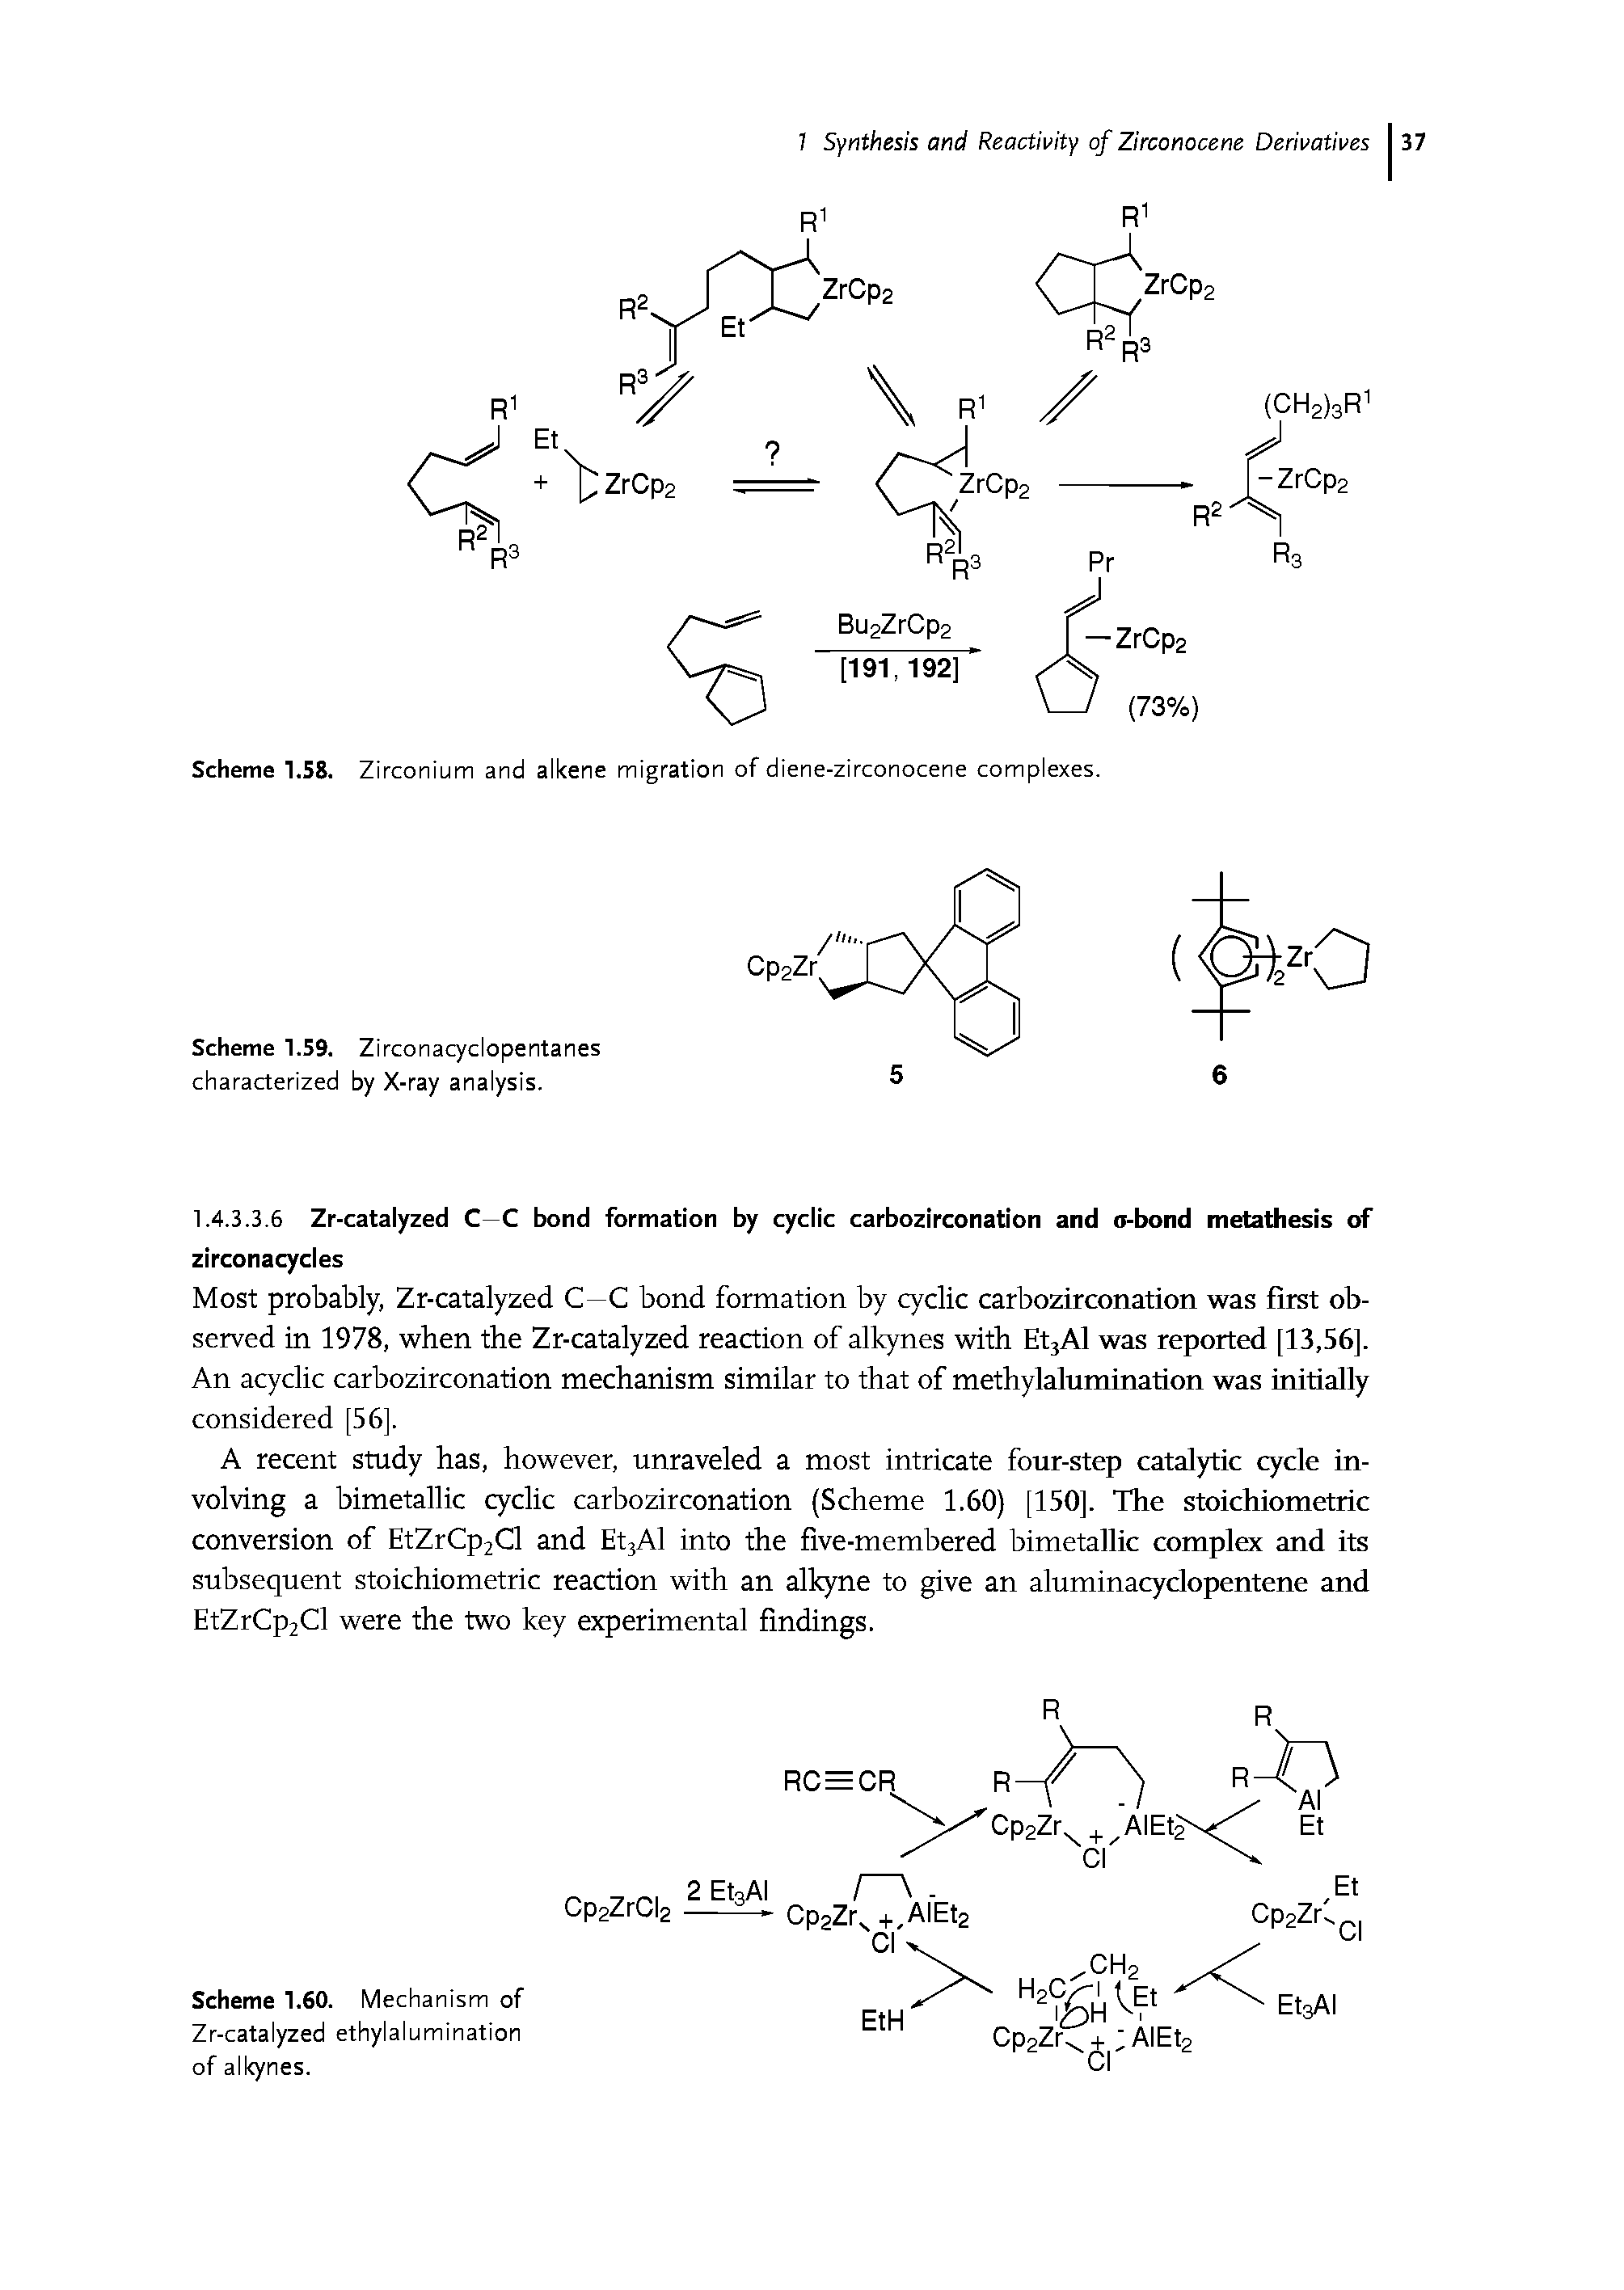 Scheme 1.58. Zirconium and alkene migration of diene-zirconocene complexes.